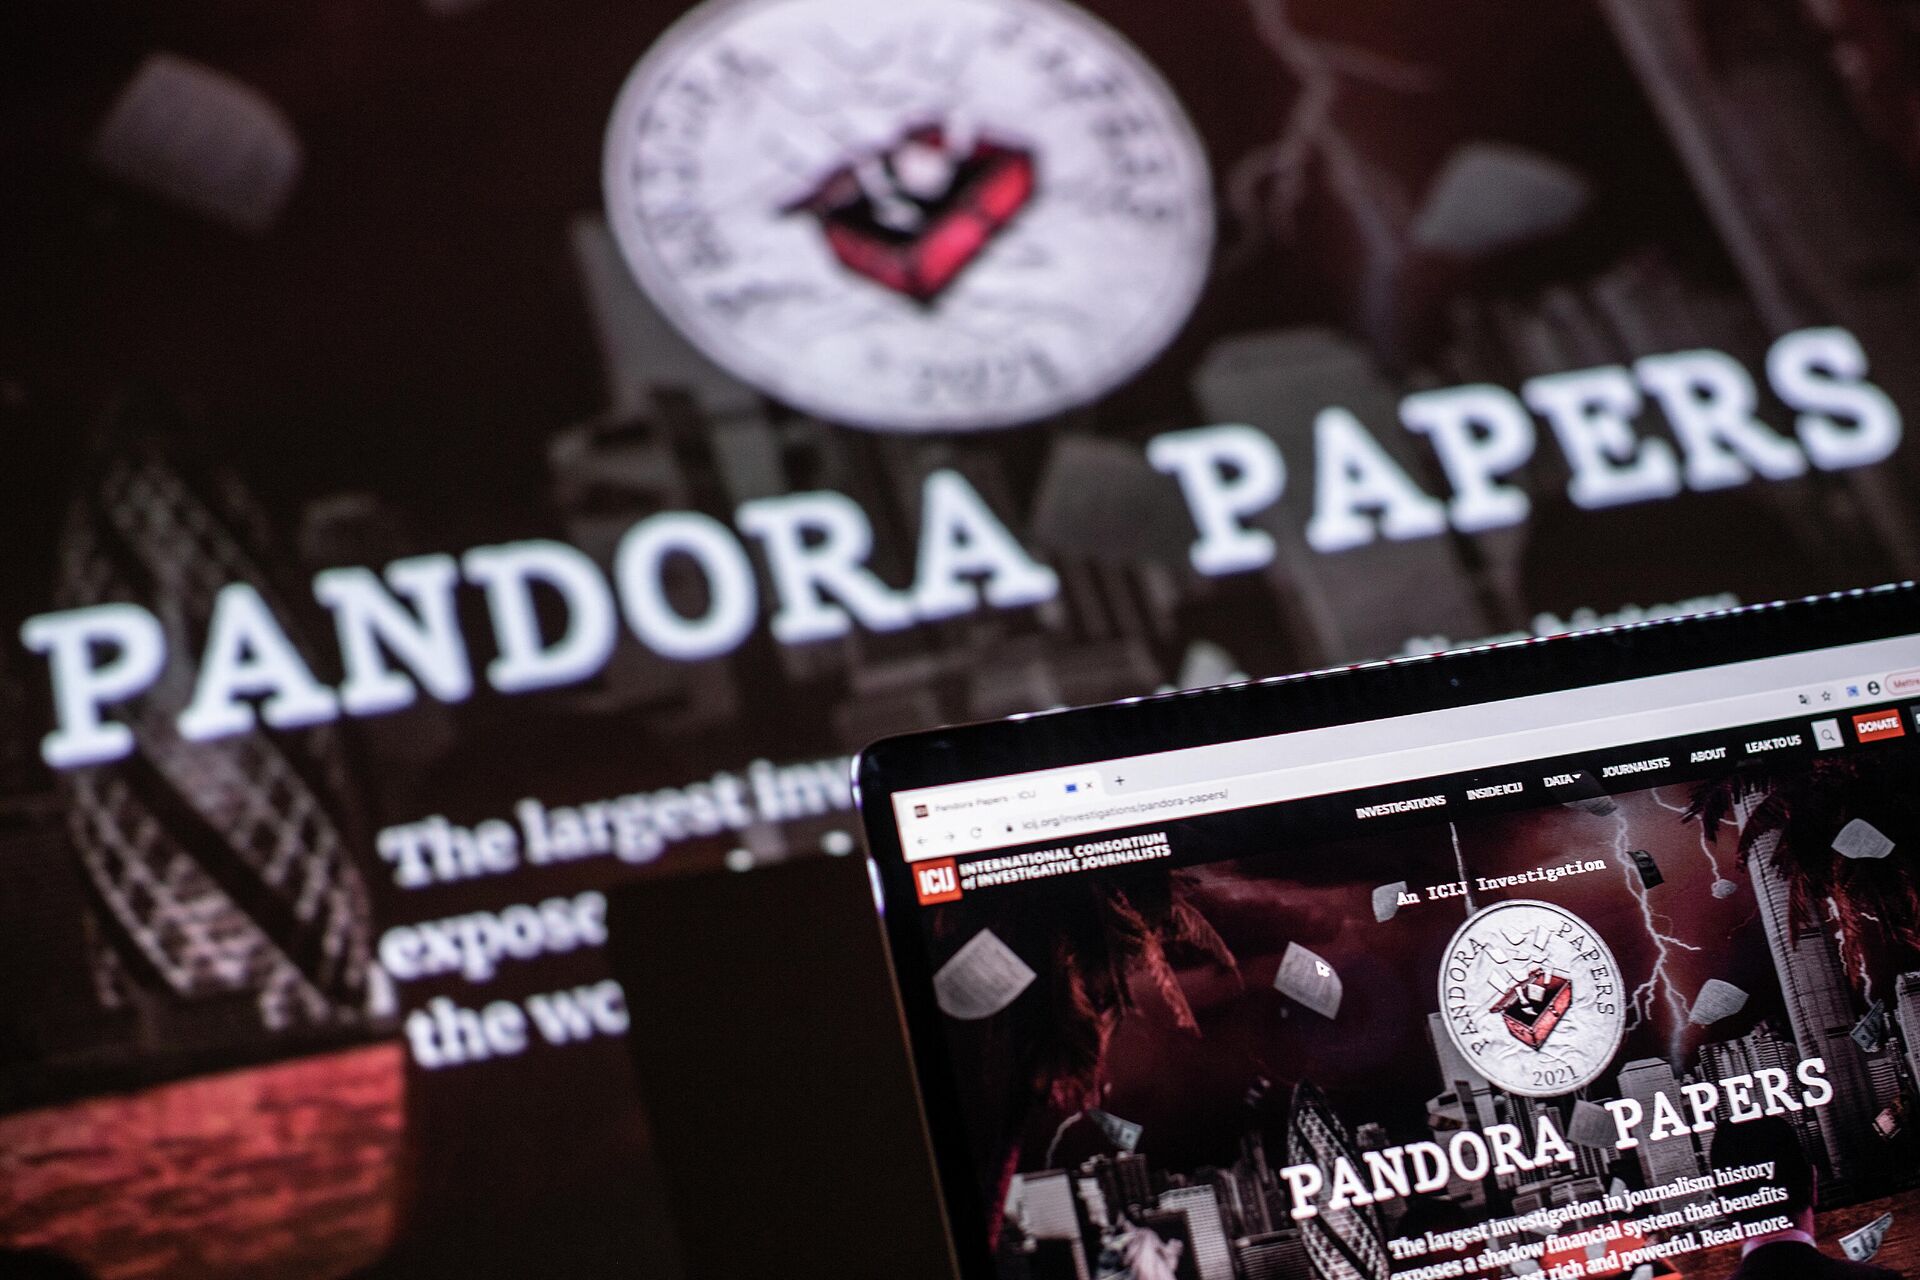 Pandora Papers Zelensky